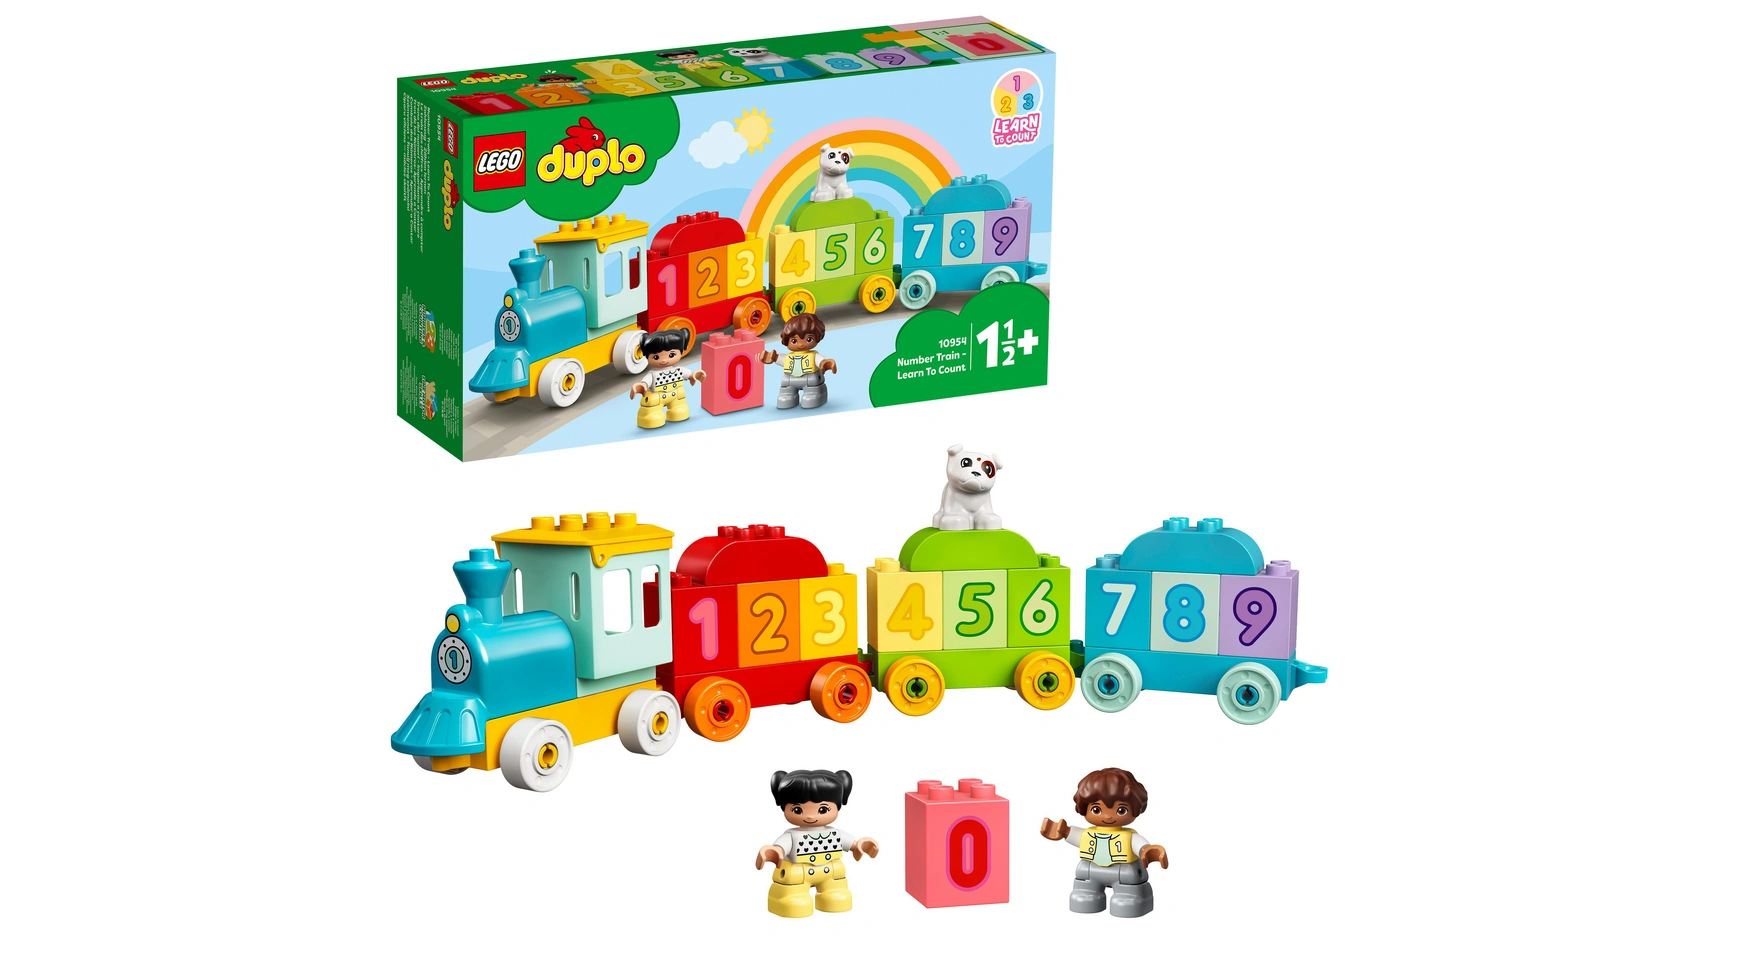 Lego DUPLO Цифровой поезд Учимся считать, детская игрушка, поезд lego duplo number train learn to count